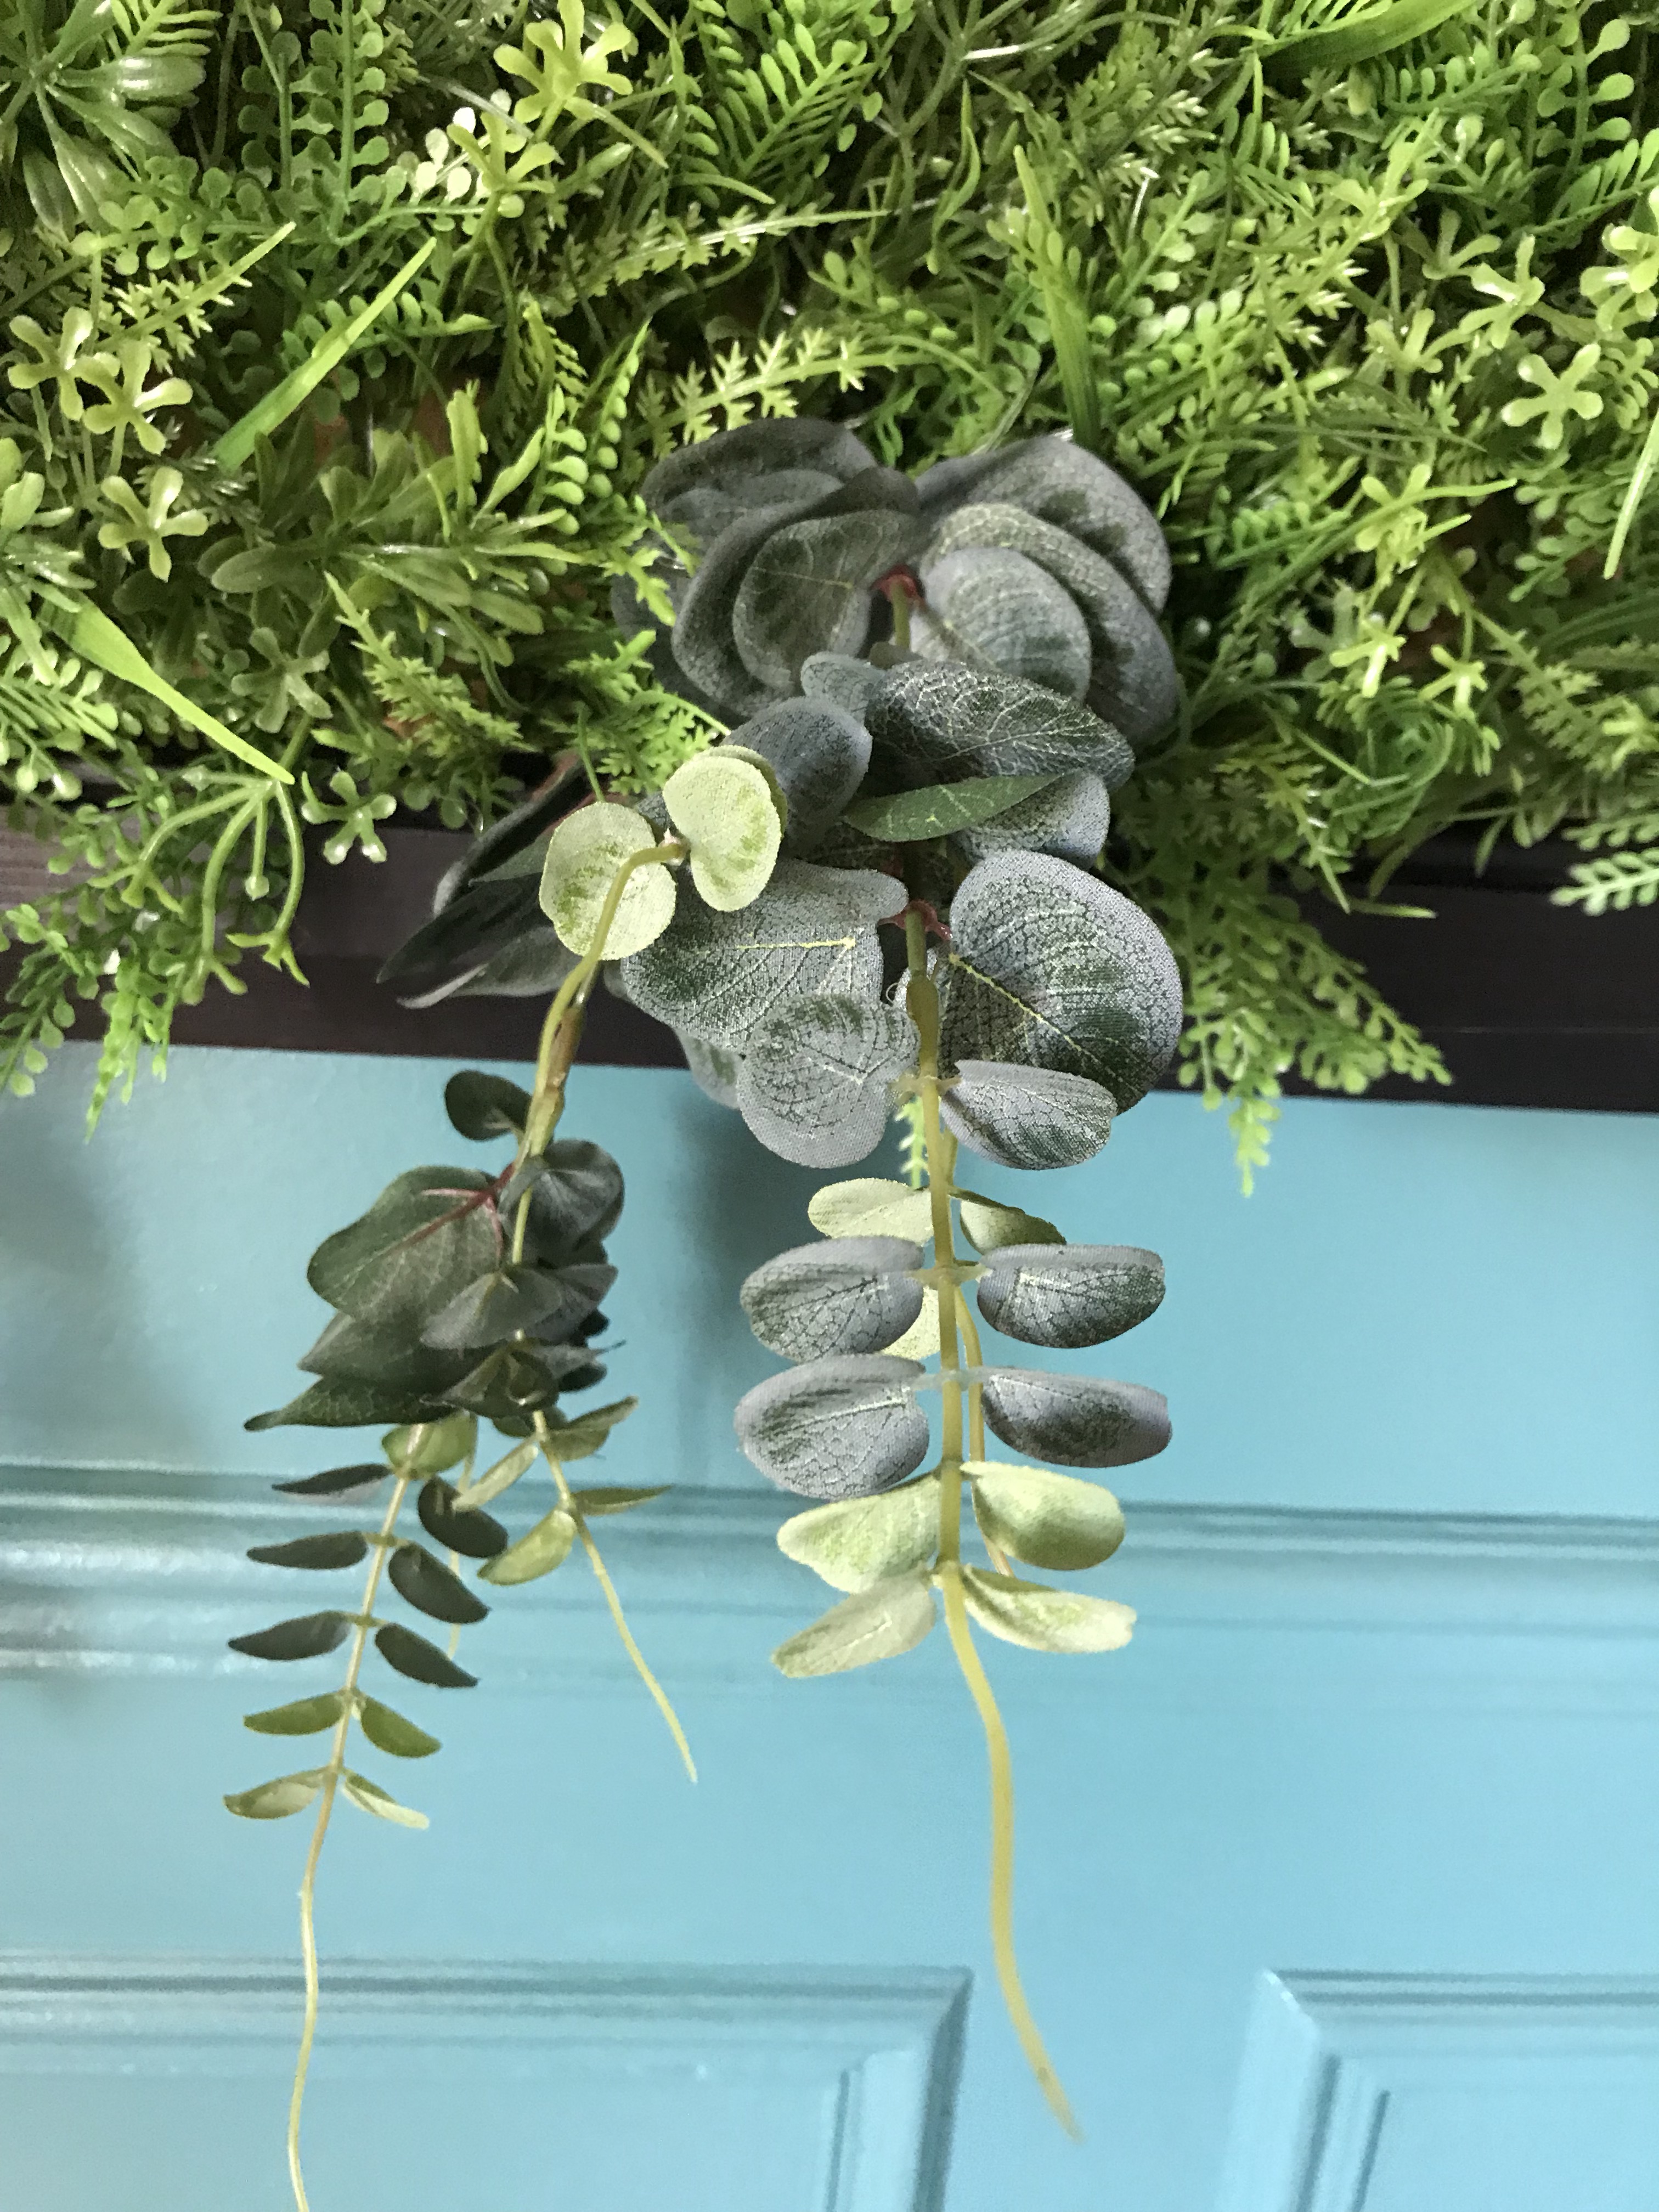 Fabriquer son propre cadre végétal avec une plaque artificielle - Blog -  Artiplantes